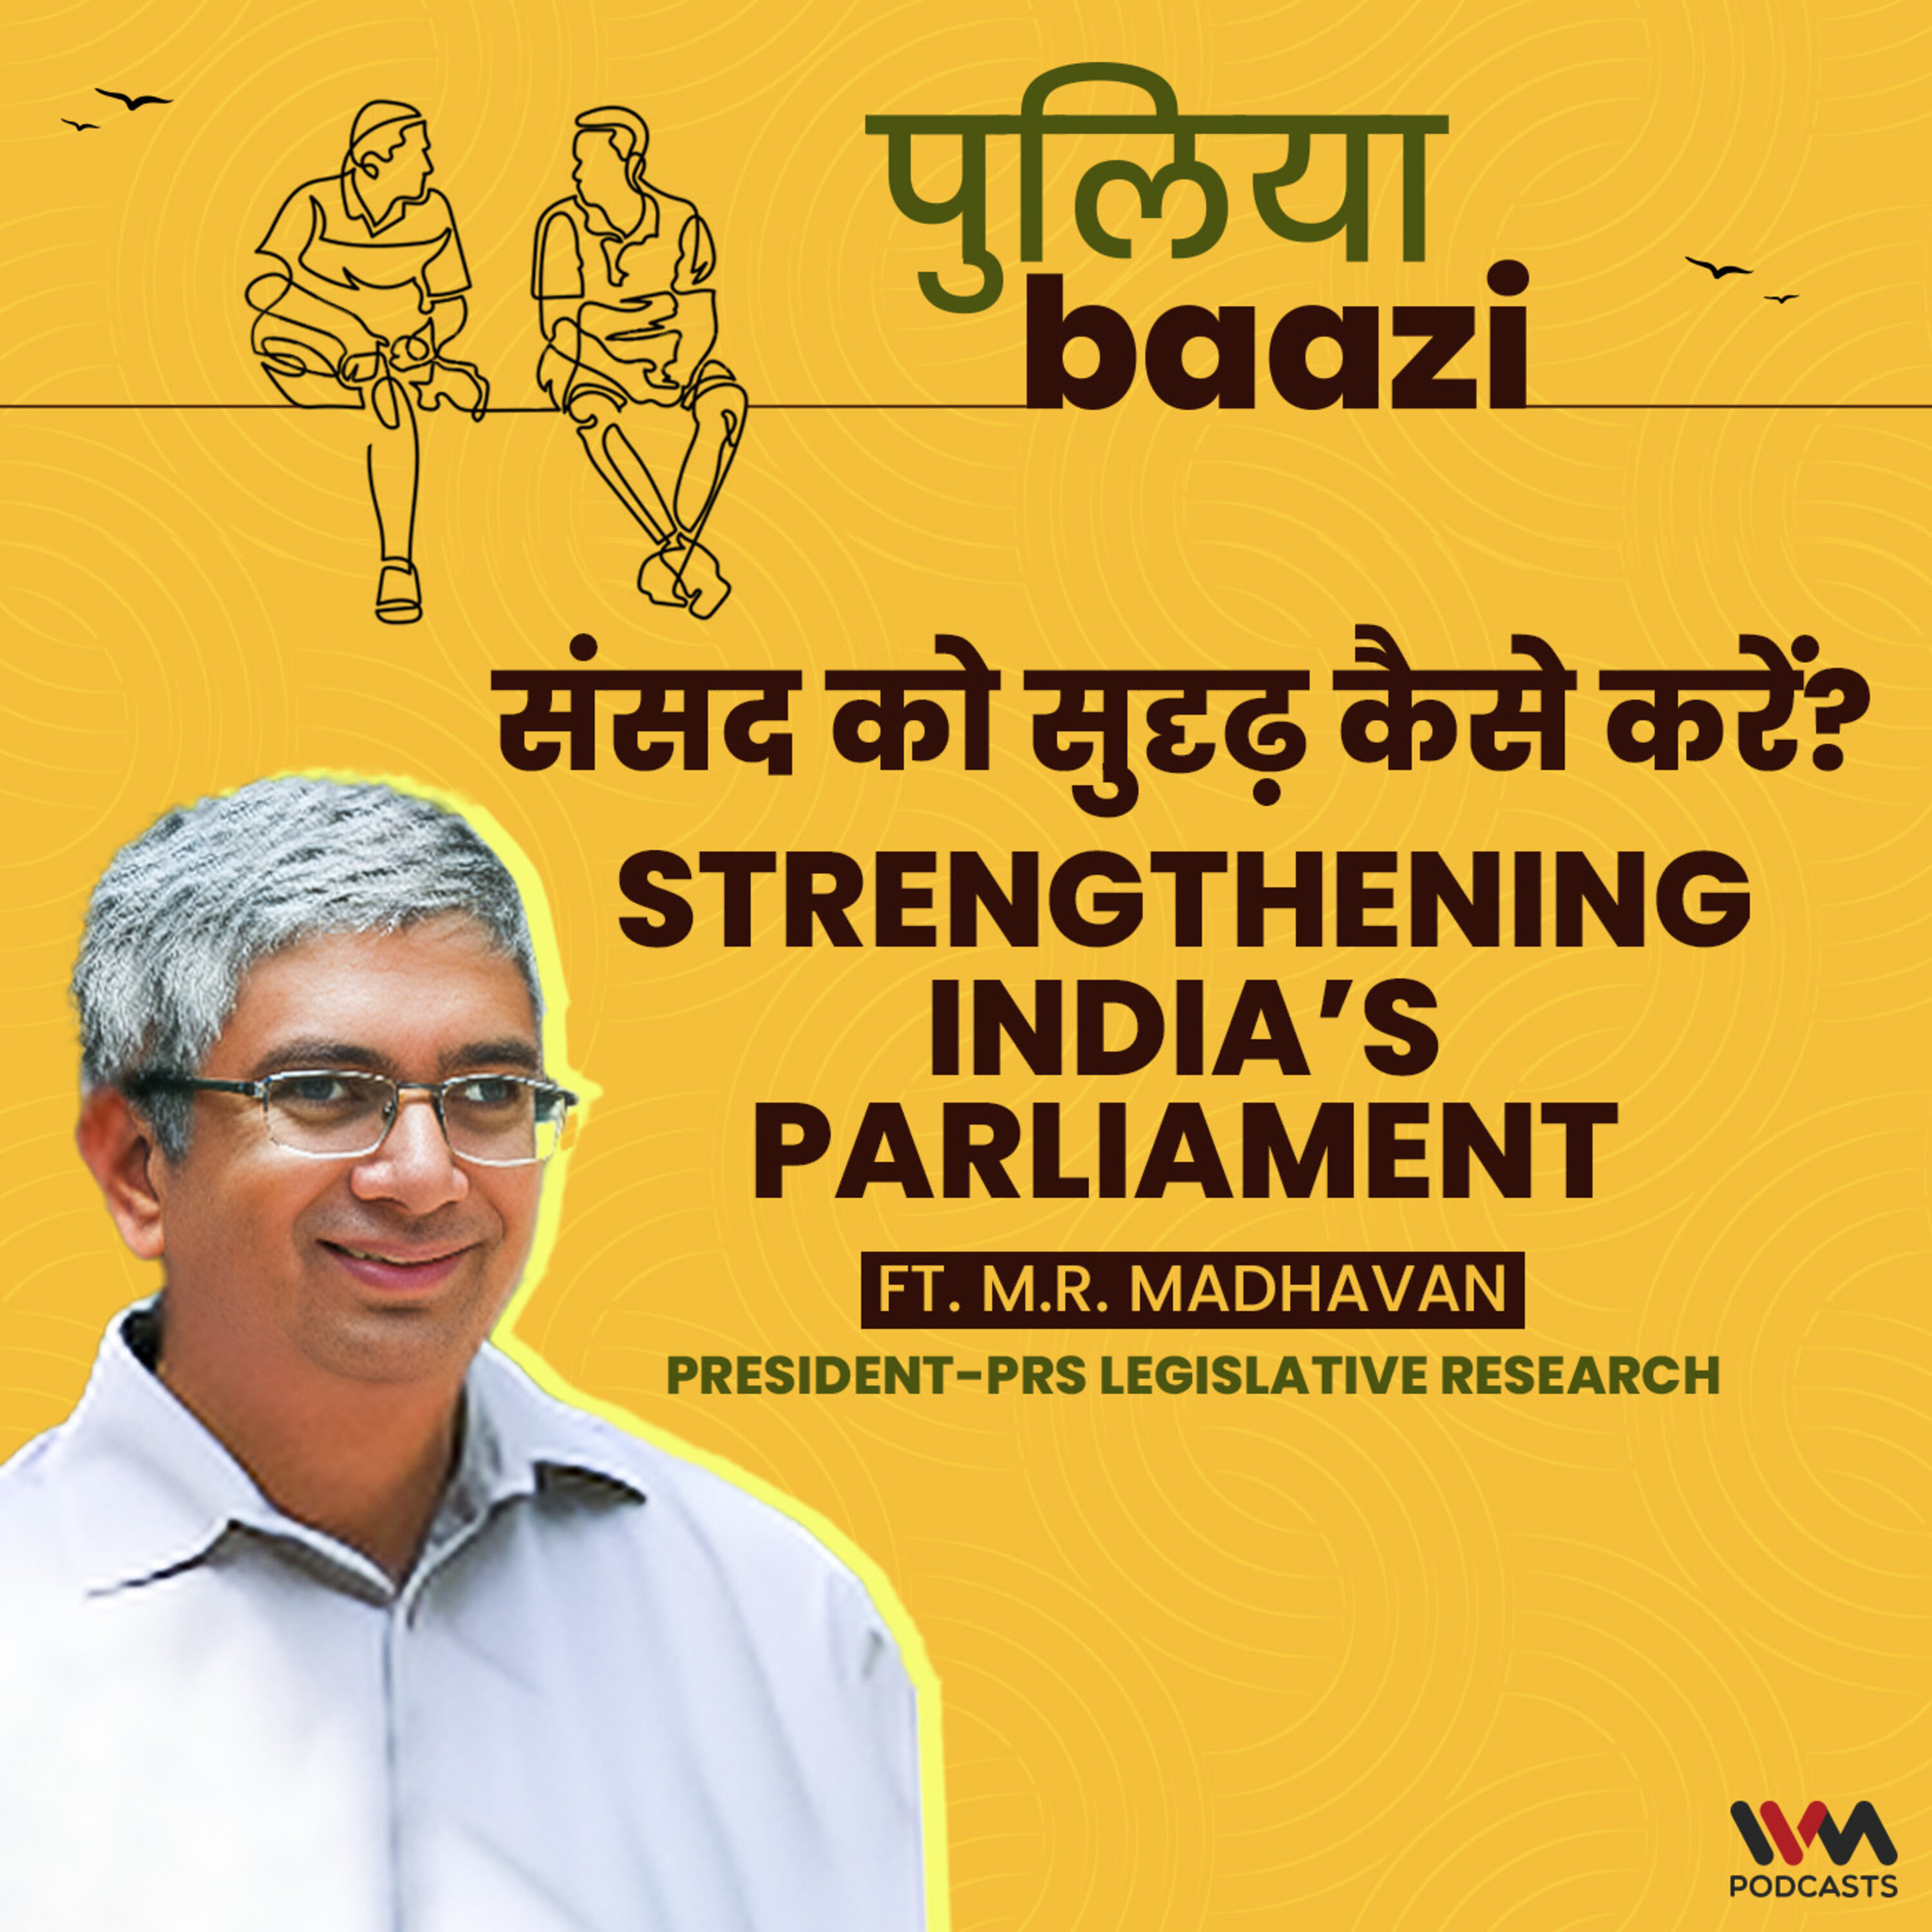 संसद को सुदृढ़ कैसे करें? Strengthening India’s Parliament Ft. M. R. Madhavan